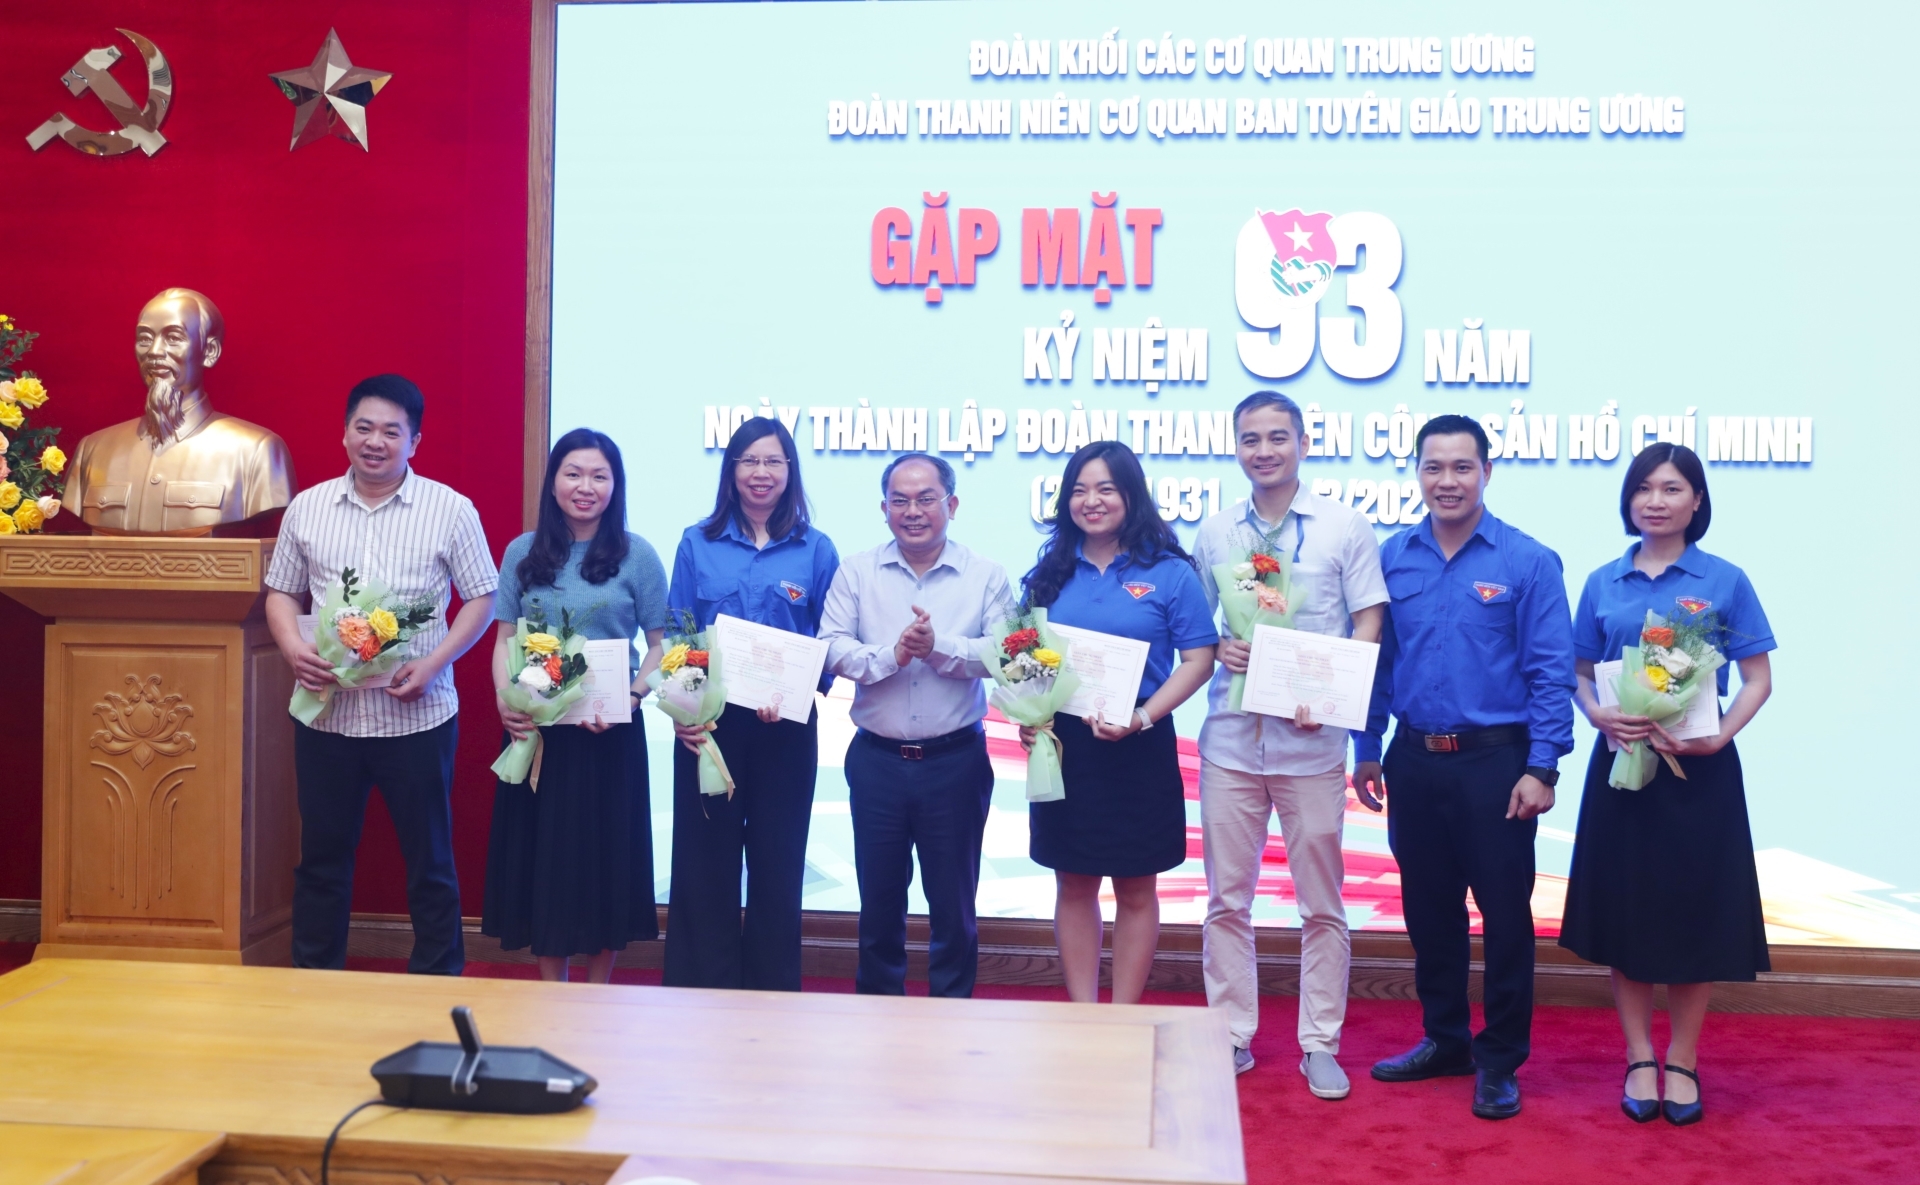 Đồng chí Nguyễn Văn Hay và đồng chí Đào Văn Hiếu trao giấy Trưởng thành Đoàn cho các đoàn viên, thanh niên, cán bộ công chức, viên chức Ban Tuyên giáo Trung ương.